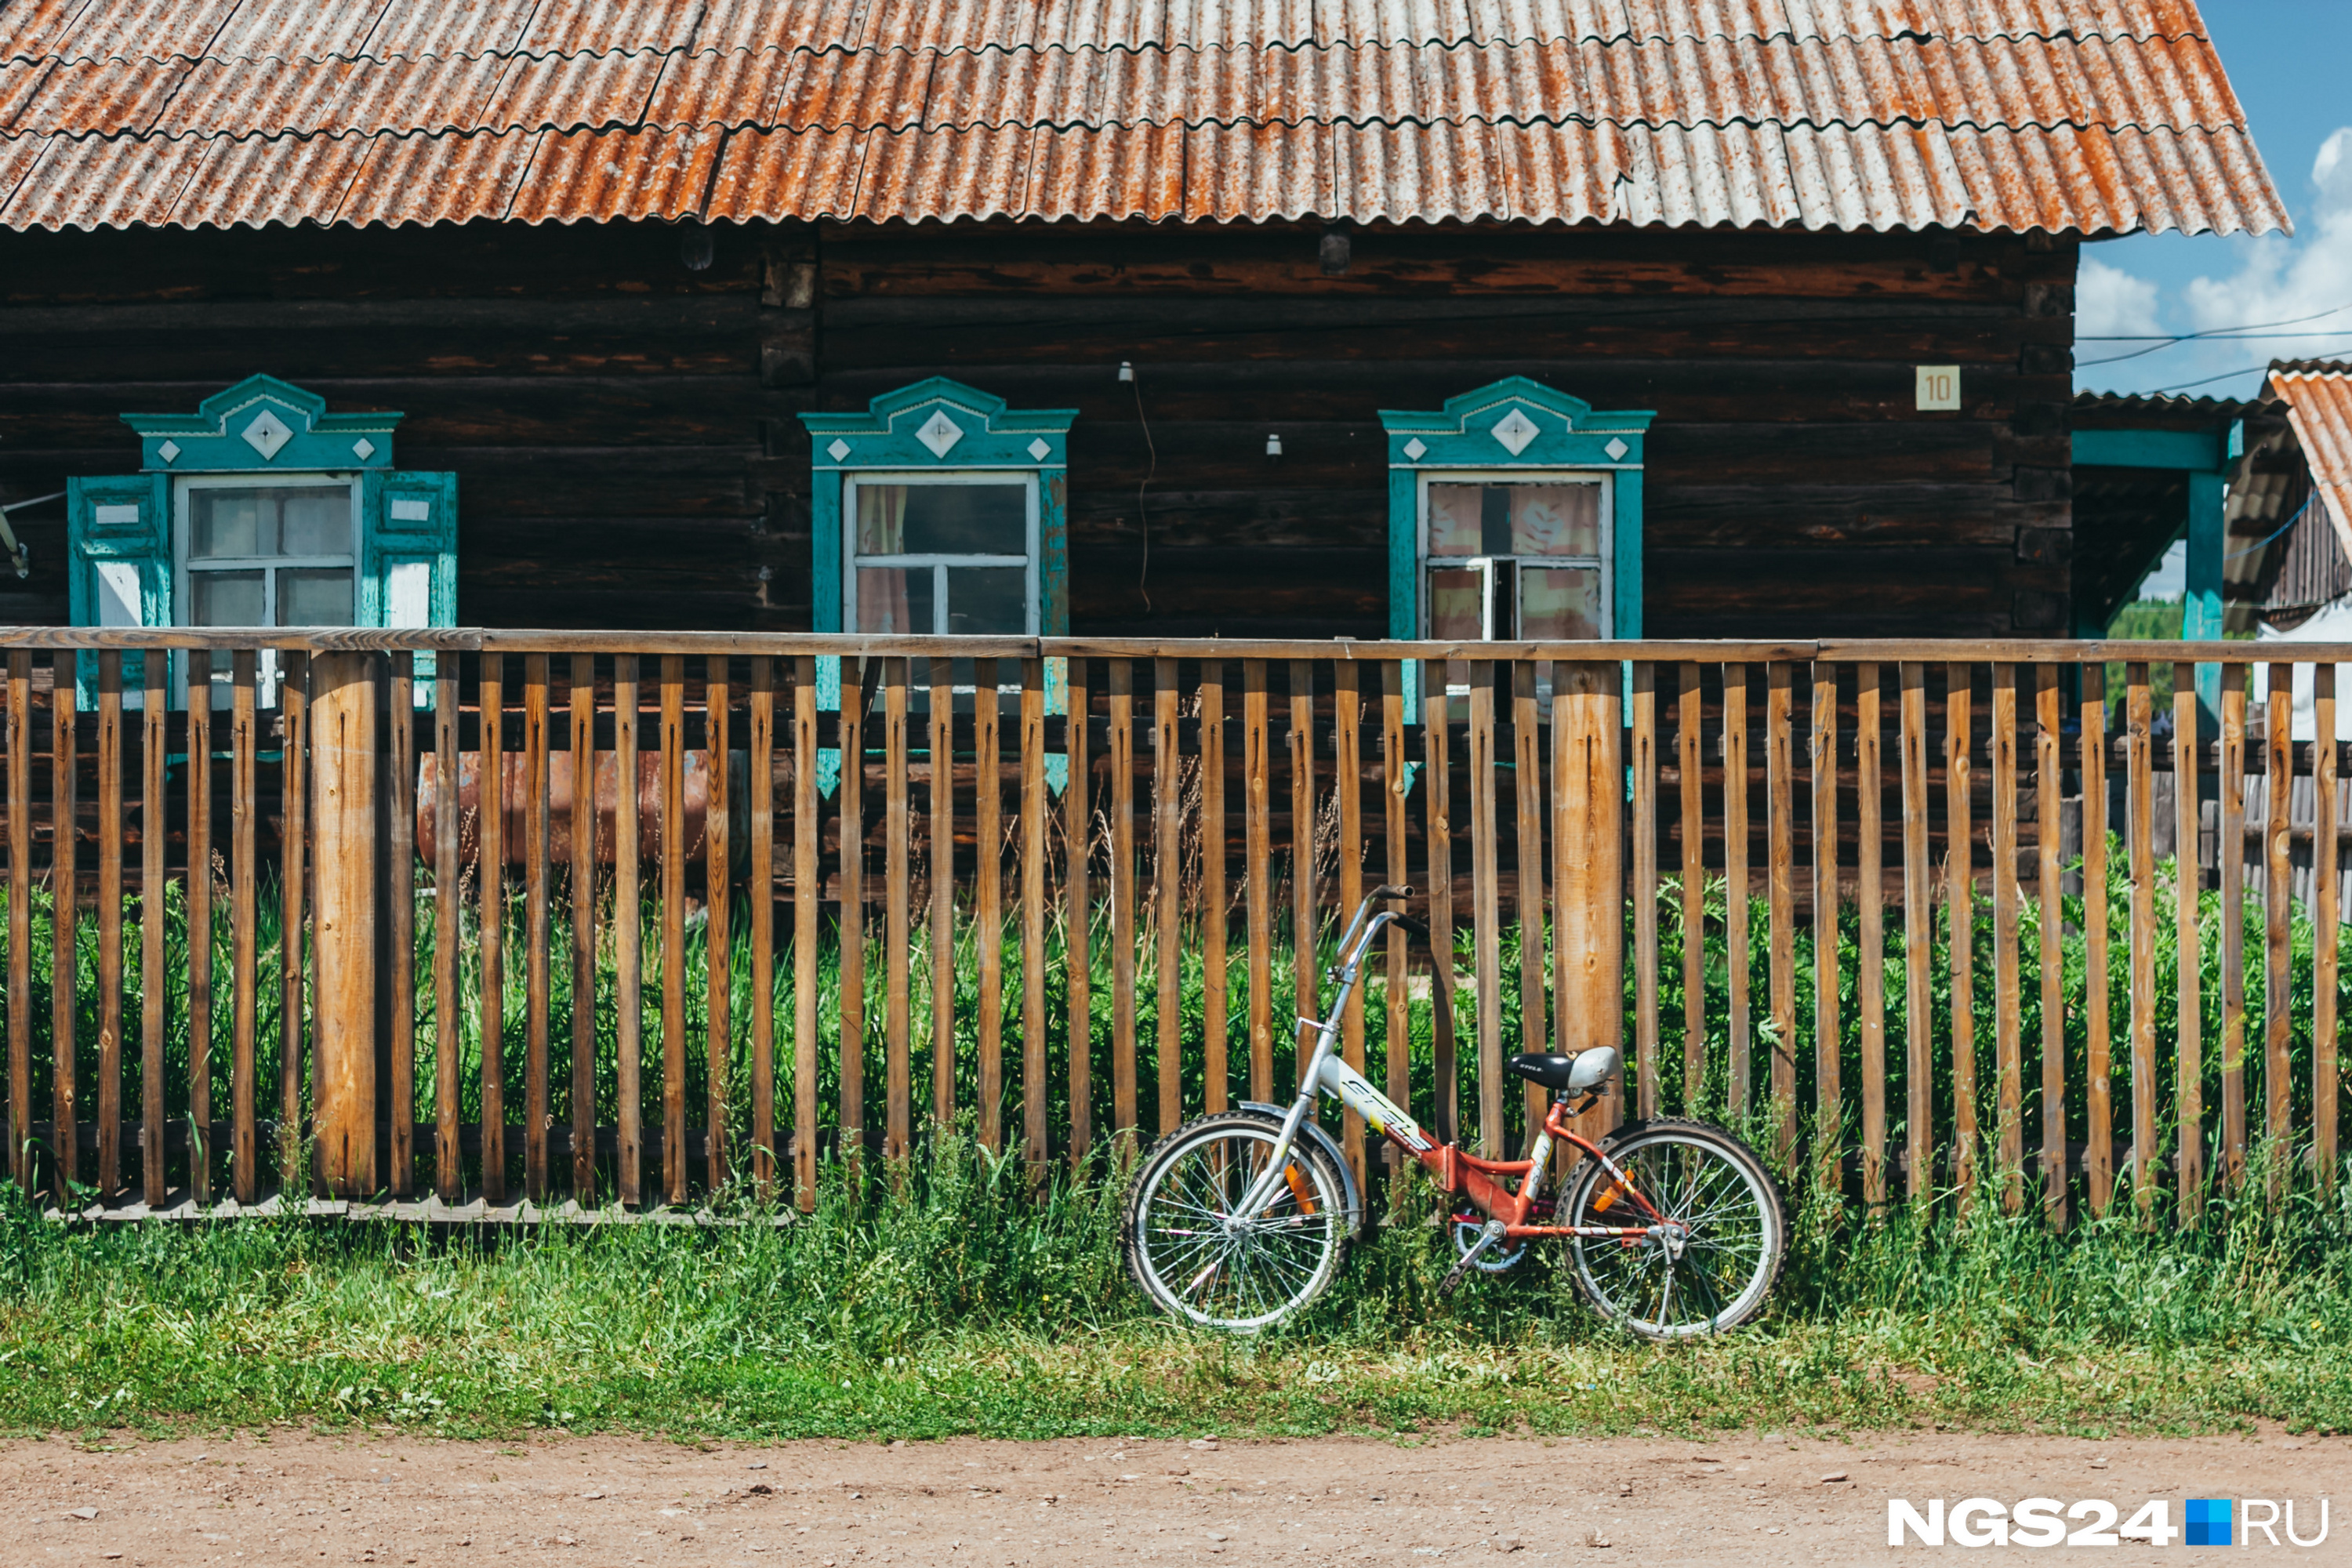 Детей летом в деревне очень много — велосипеды стоят у каждого четвертого забора